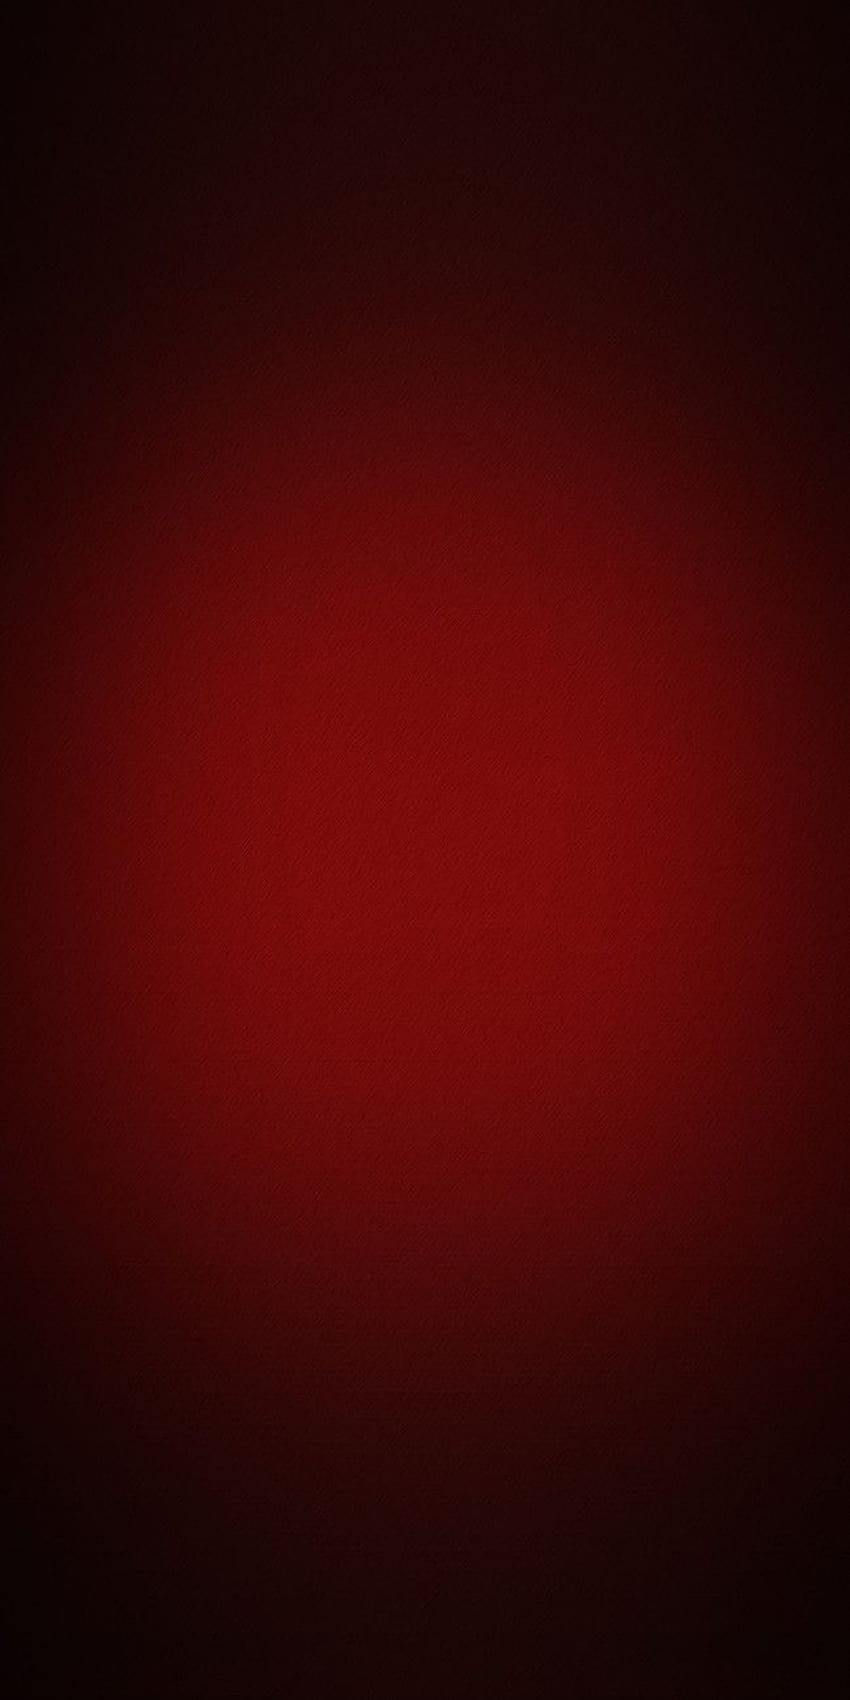 Latar Belakang Gradien Merah Tua, android gradien merah tua dan hitam oranye wallpaper ponsel HD